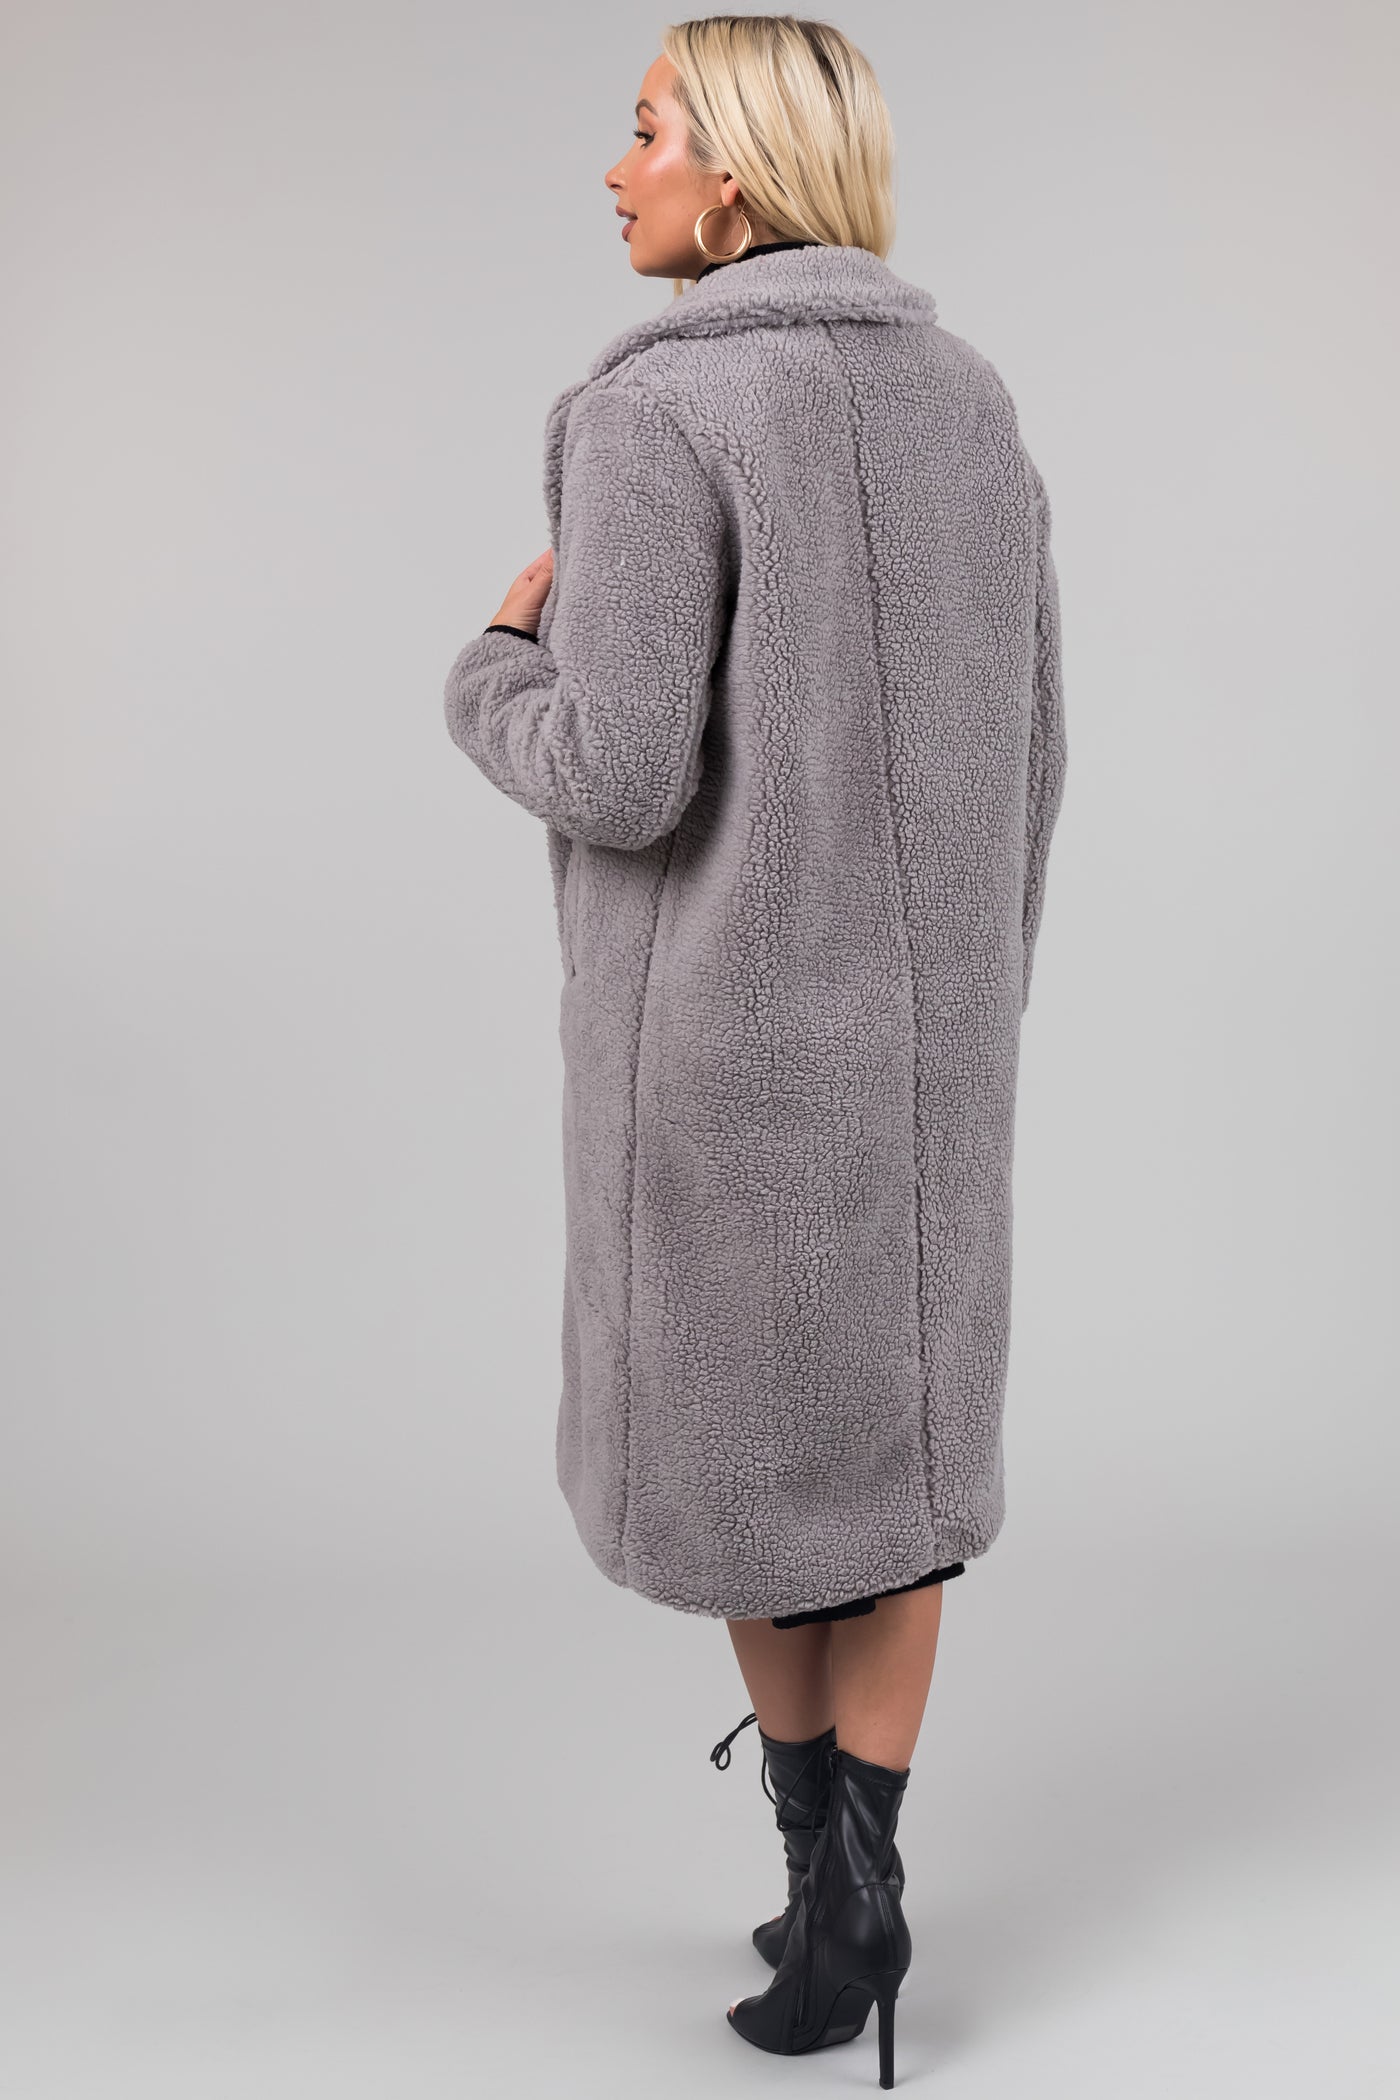 Stone Grey Longline Teddy Coat with Pockets